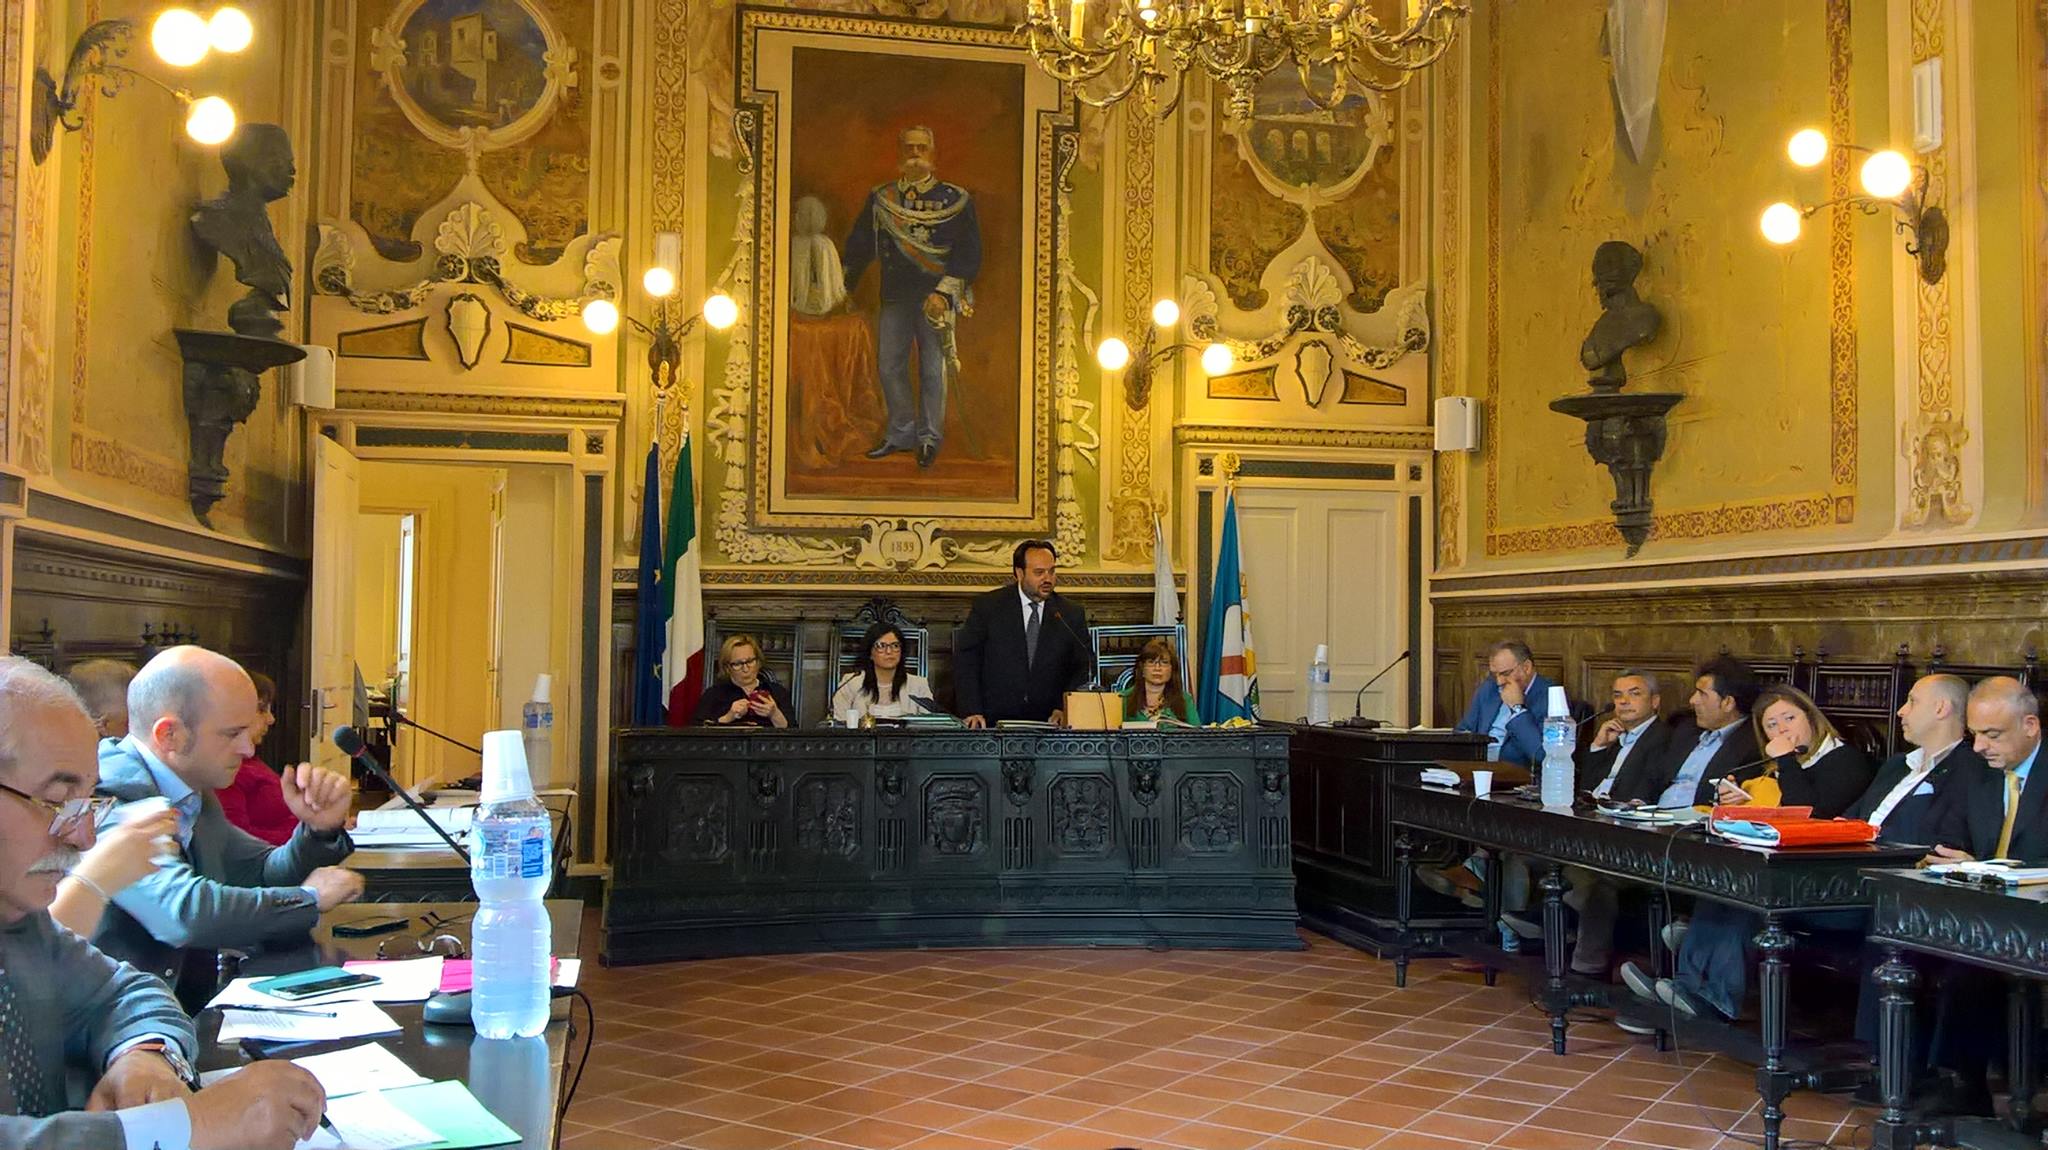 Sant’Agata de’Goti| l’assessore Viola convoca la conferenza stampa per le vicende giudiziarie